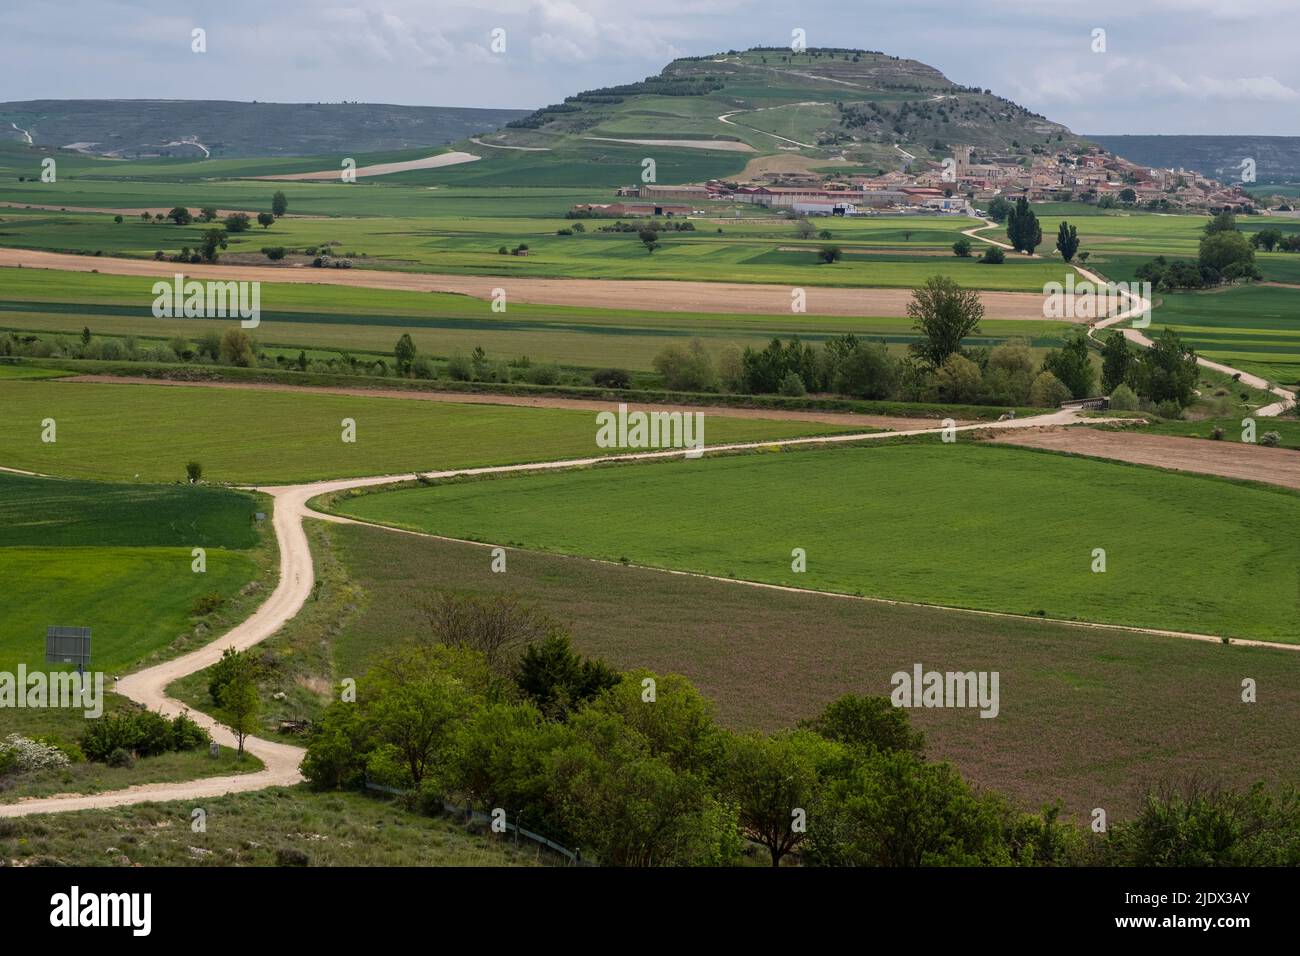 Spain, Castilla y Leon, Looking toward Castrojeriz from the Camino de Santiago, going through Farmland in foreground. Stock Photo